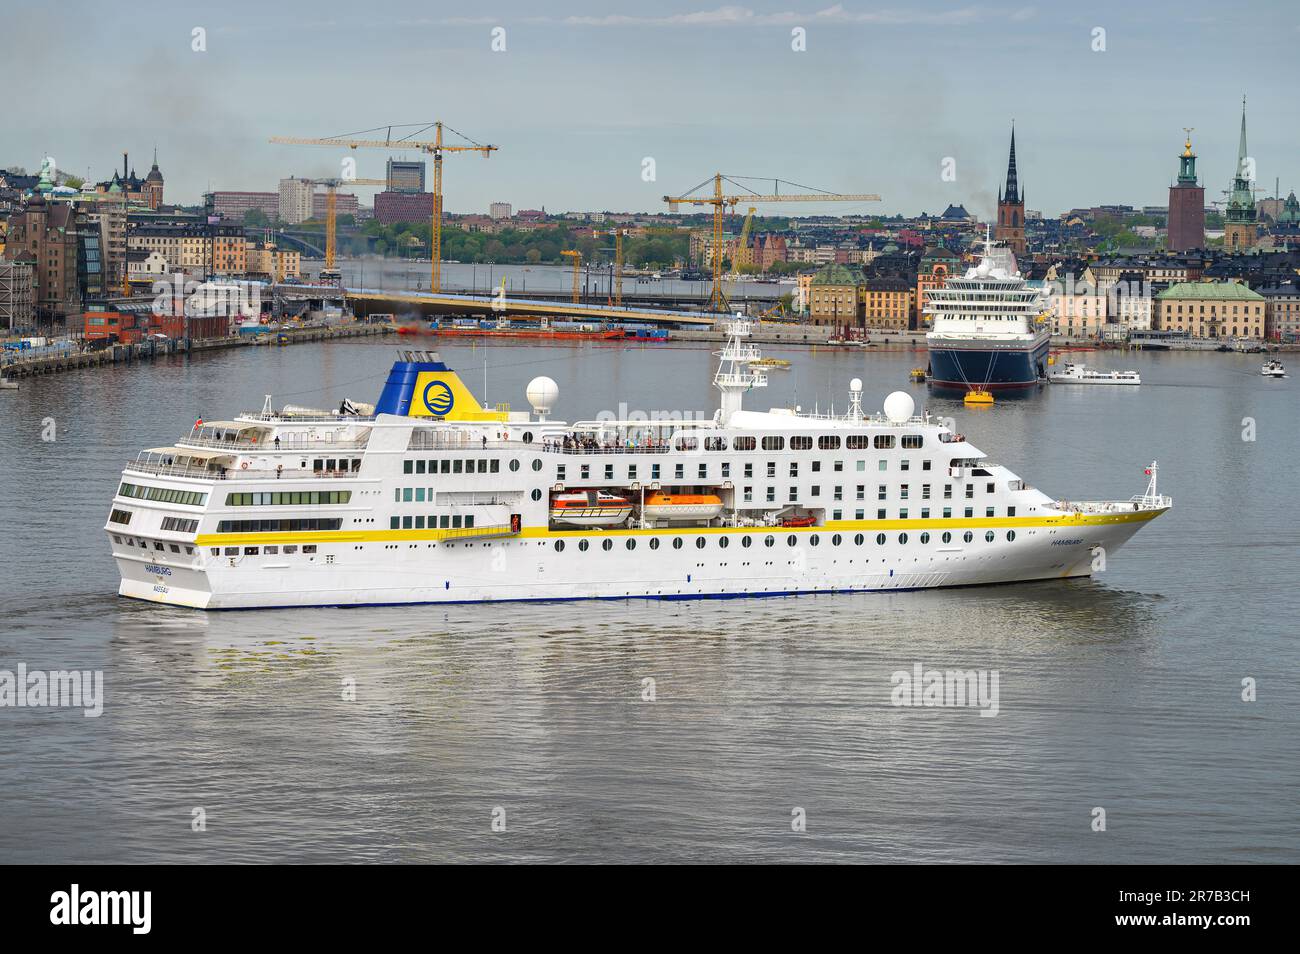 Le navire de croisière allemand Plantours Hamburg arrive à Stockholm, en Suède. Banque D'Images